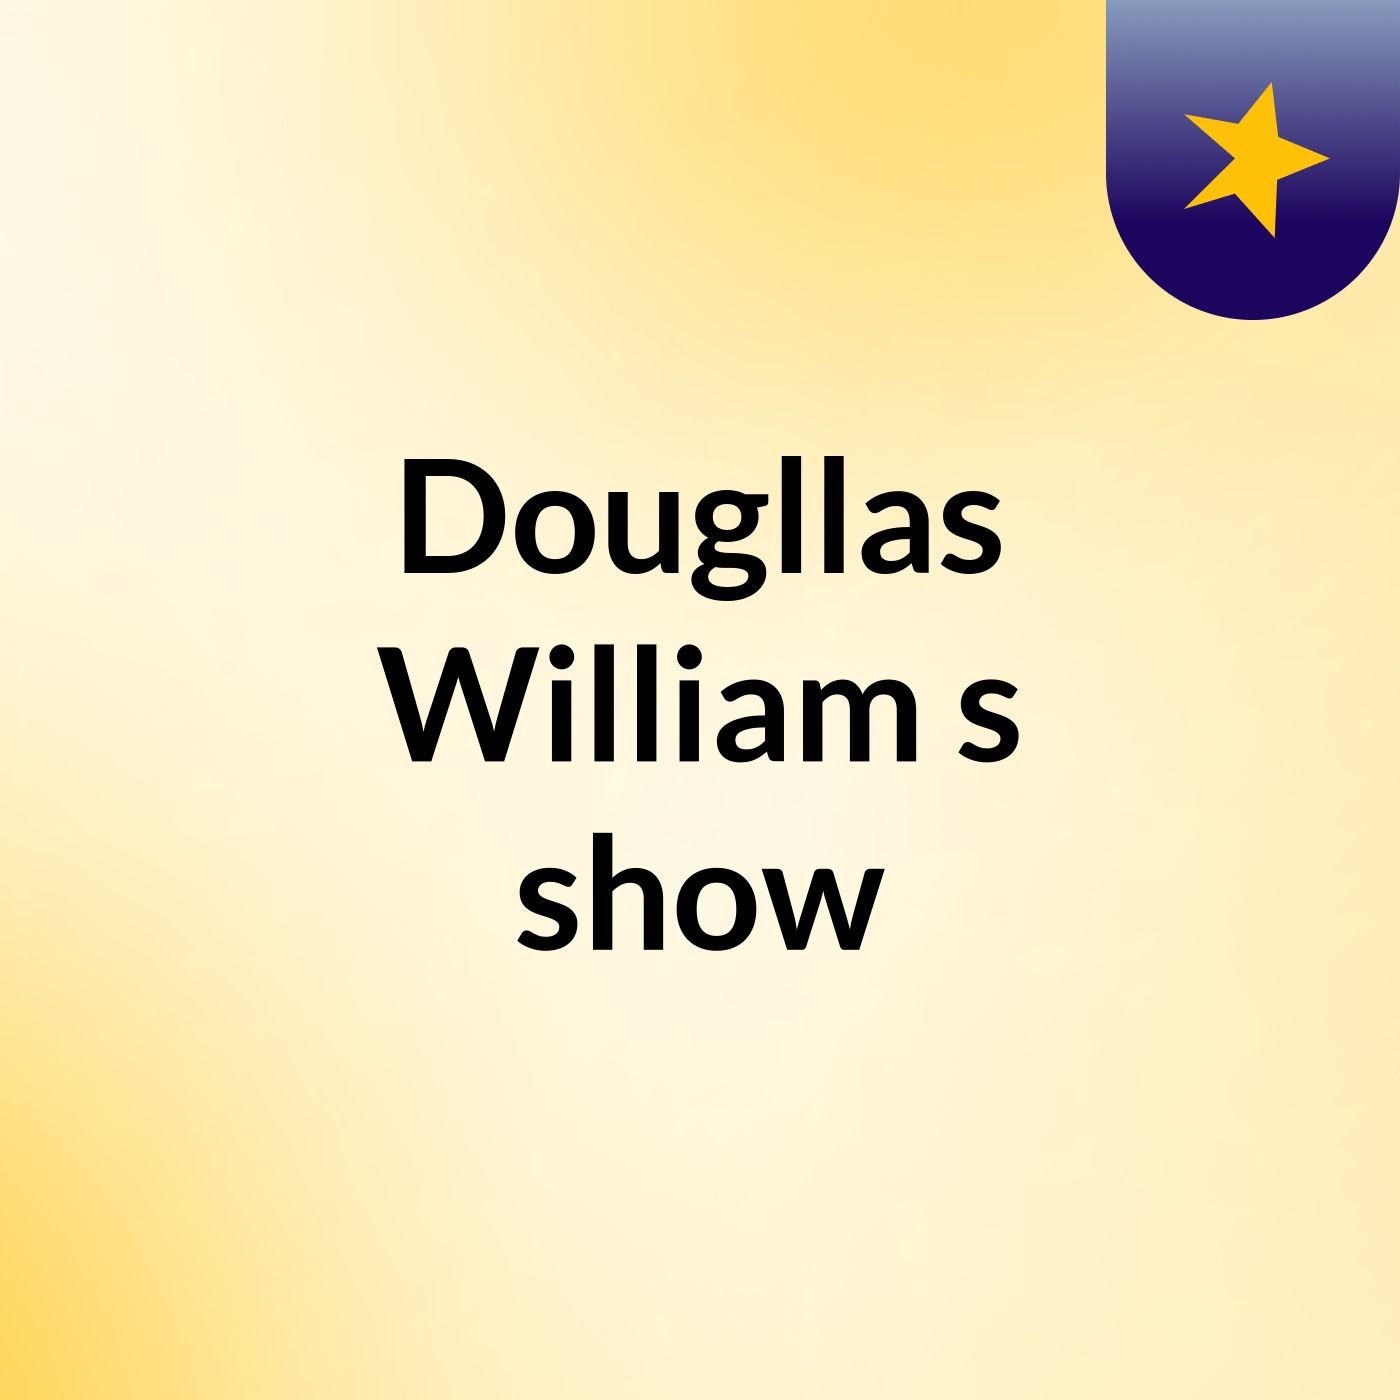 Dougllas William's show